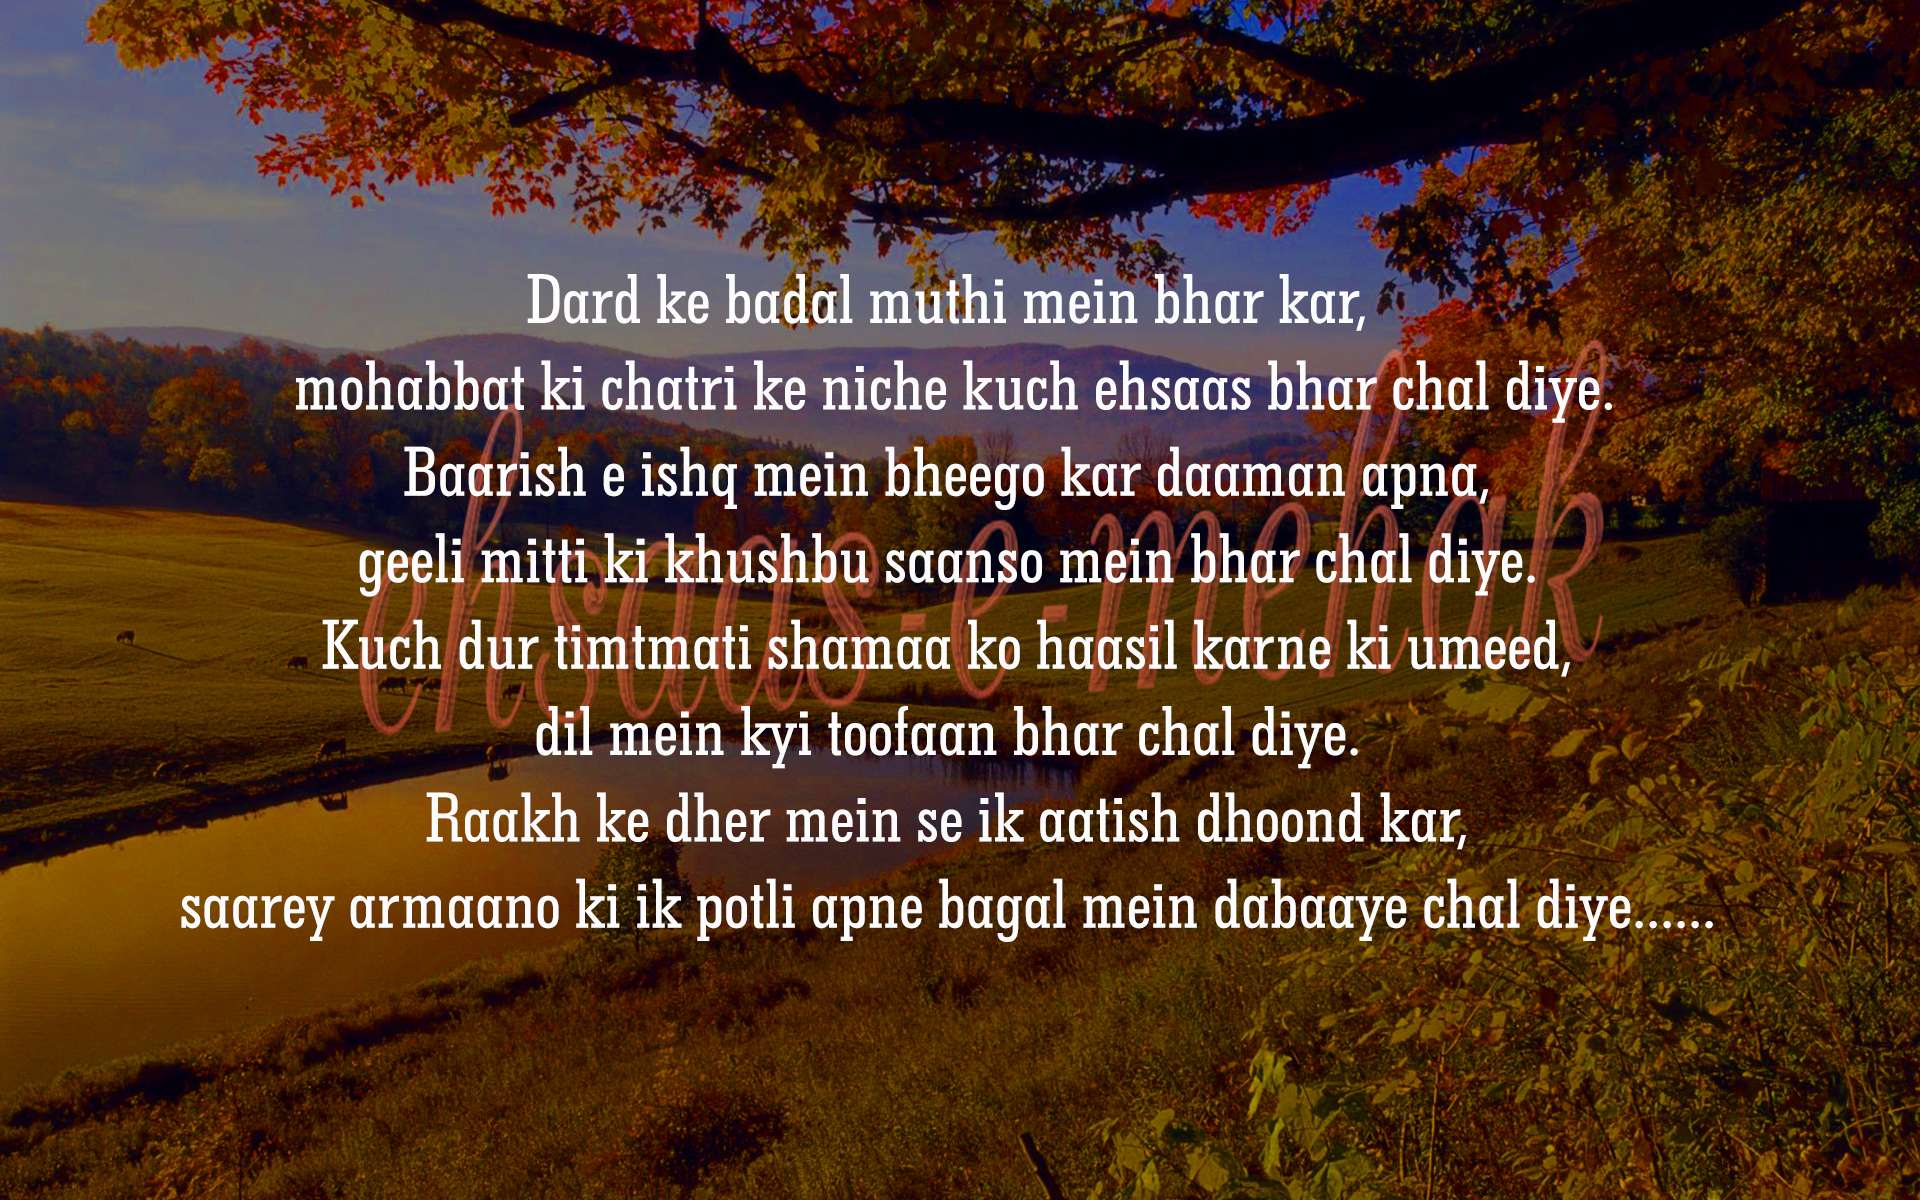 best hindi shayari for love, best love shayari in hindi, blogs, hindi poetry, hindi poetry on life, hindi shayari, Indian poetry writers, judaai shayari, love hindi shayari, Love quotes with image, poetry images in hindi, poetry in hindi, sad shayri, shayari in hindi